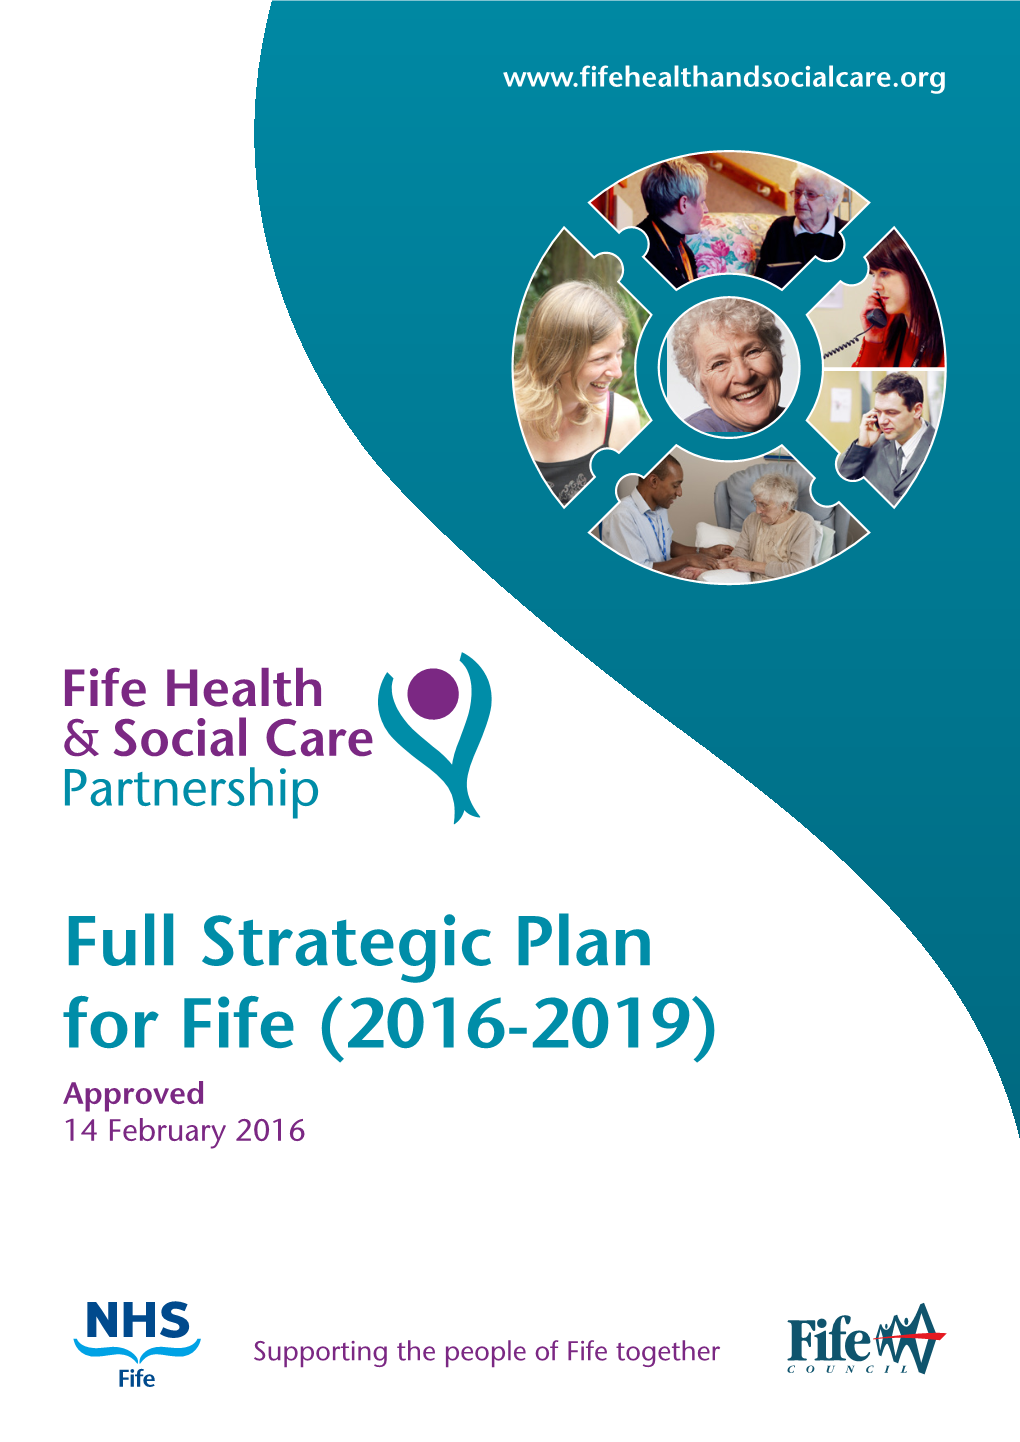 Full Strategic Plan for Fife (2016-2019) Approved 14 February 2016